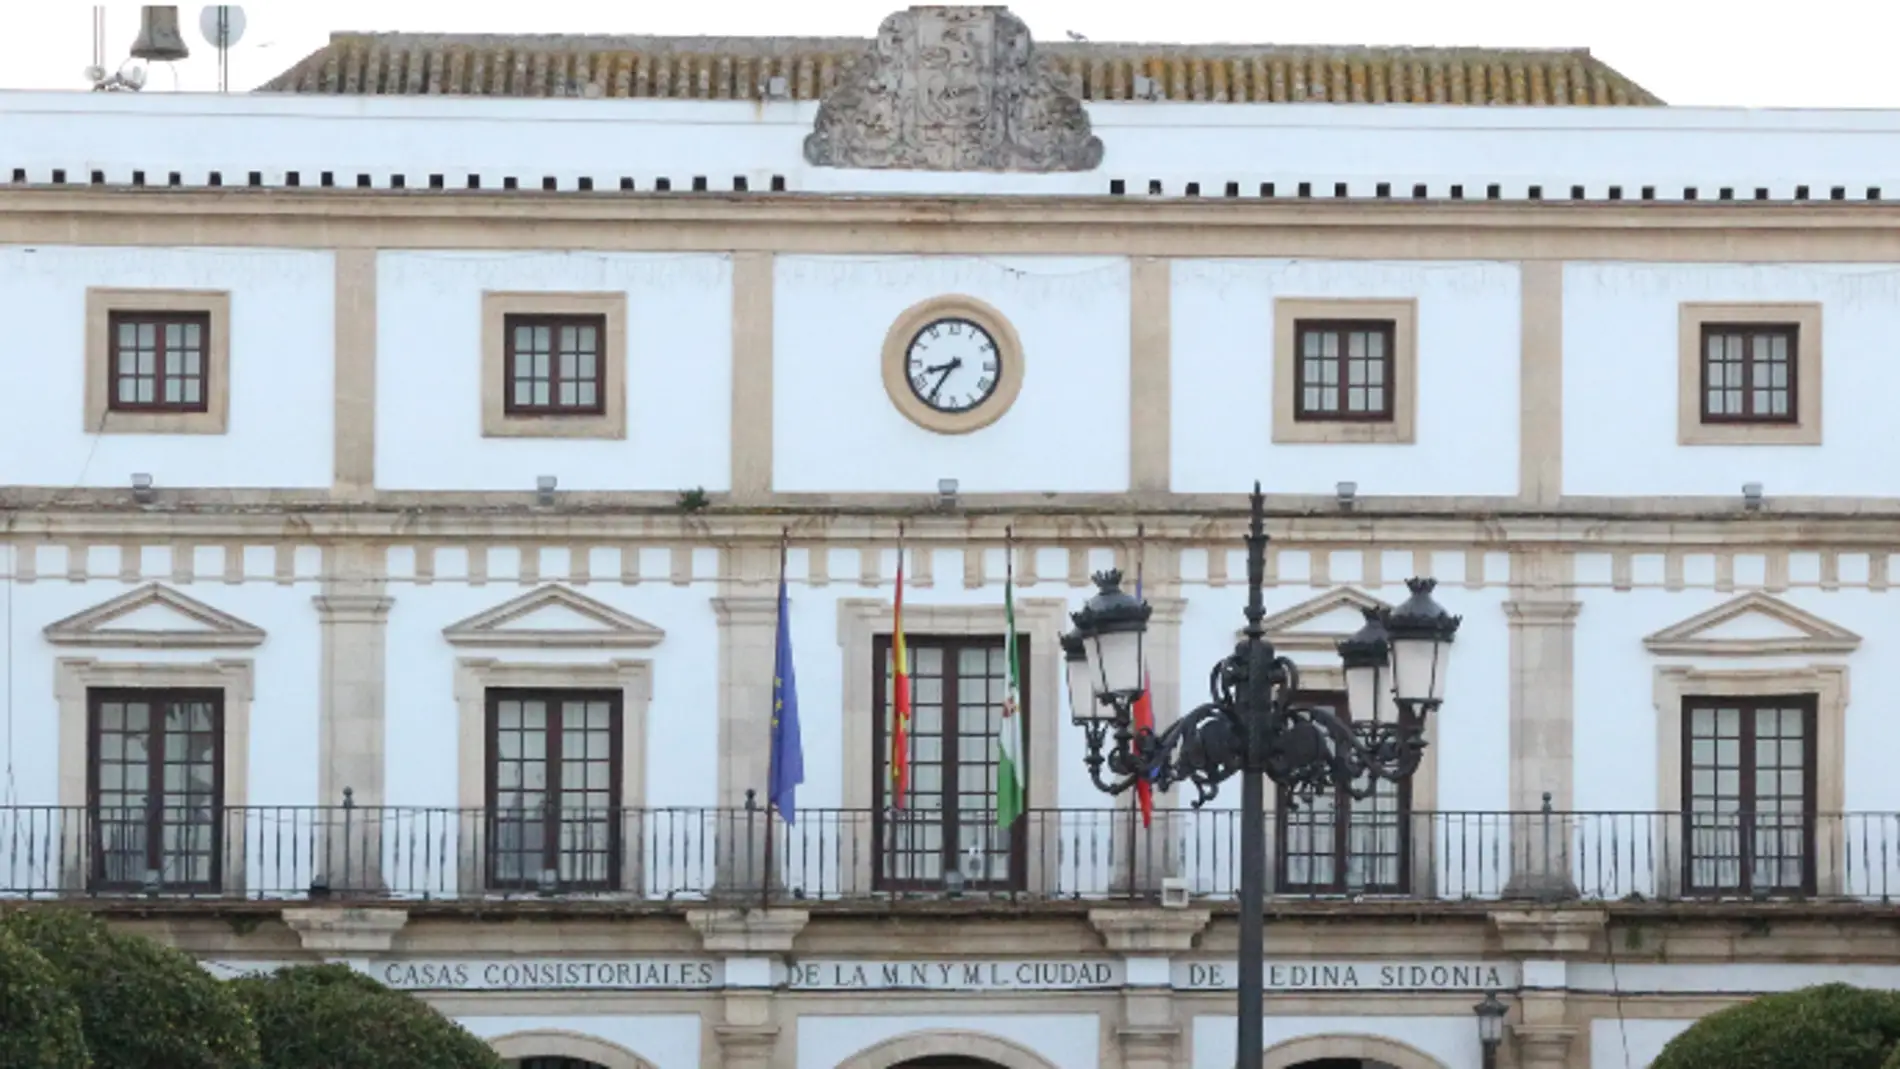 El edificio principal del Ayuntamiento de Medina Sidonia